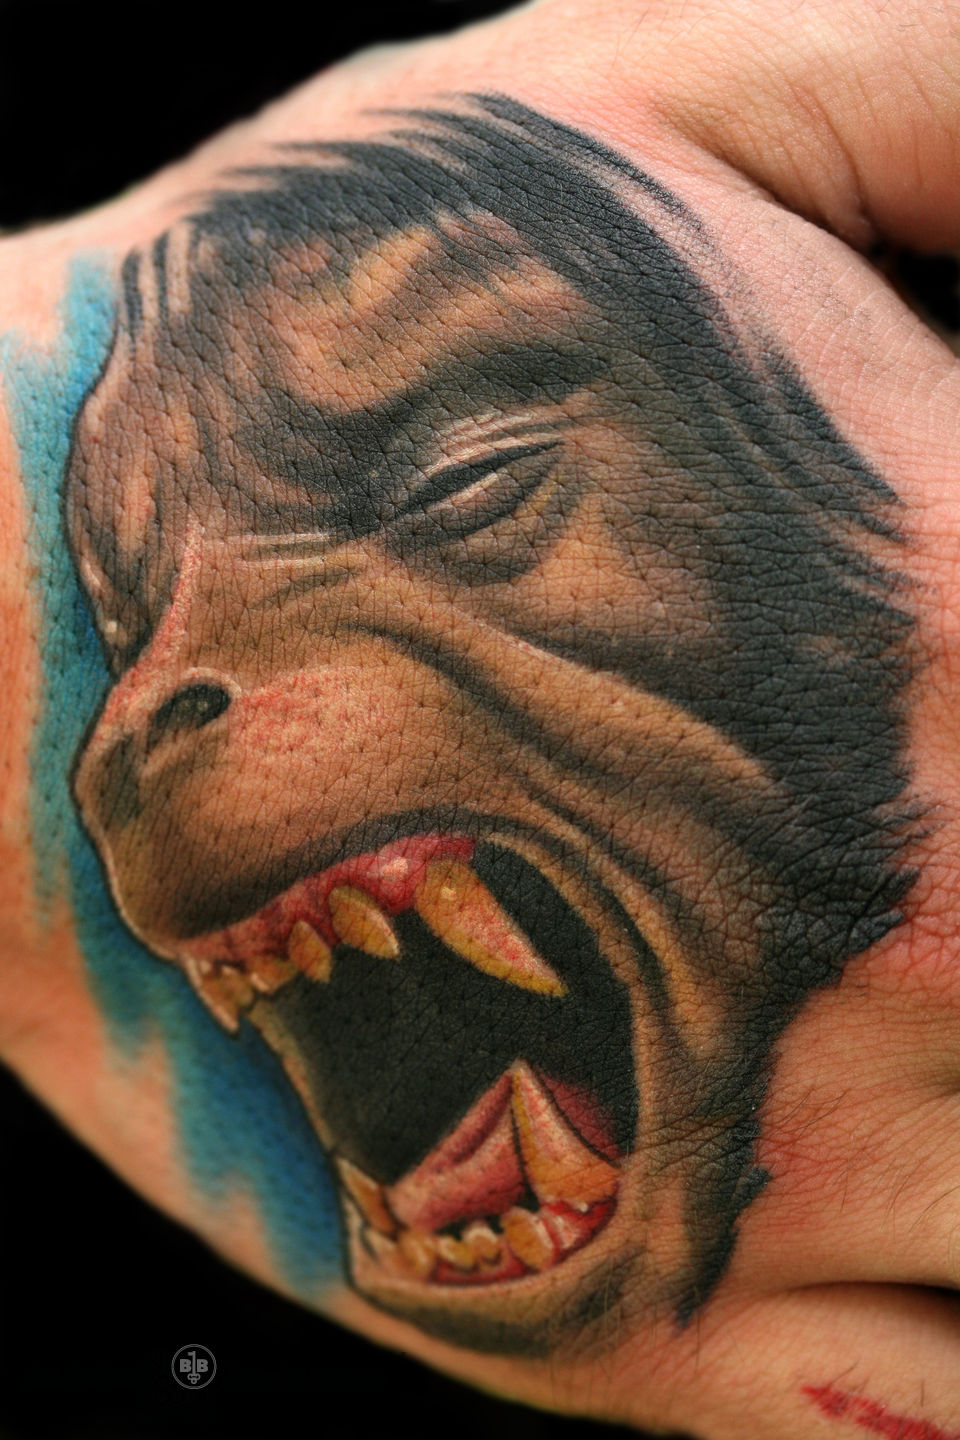 Werewolf Flash - Rempe, 36th St. Tattoo - Seattle, WA : r/tattoos